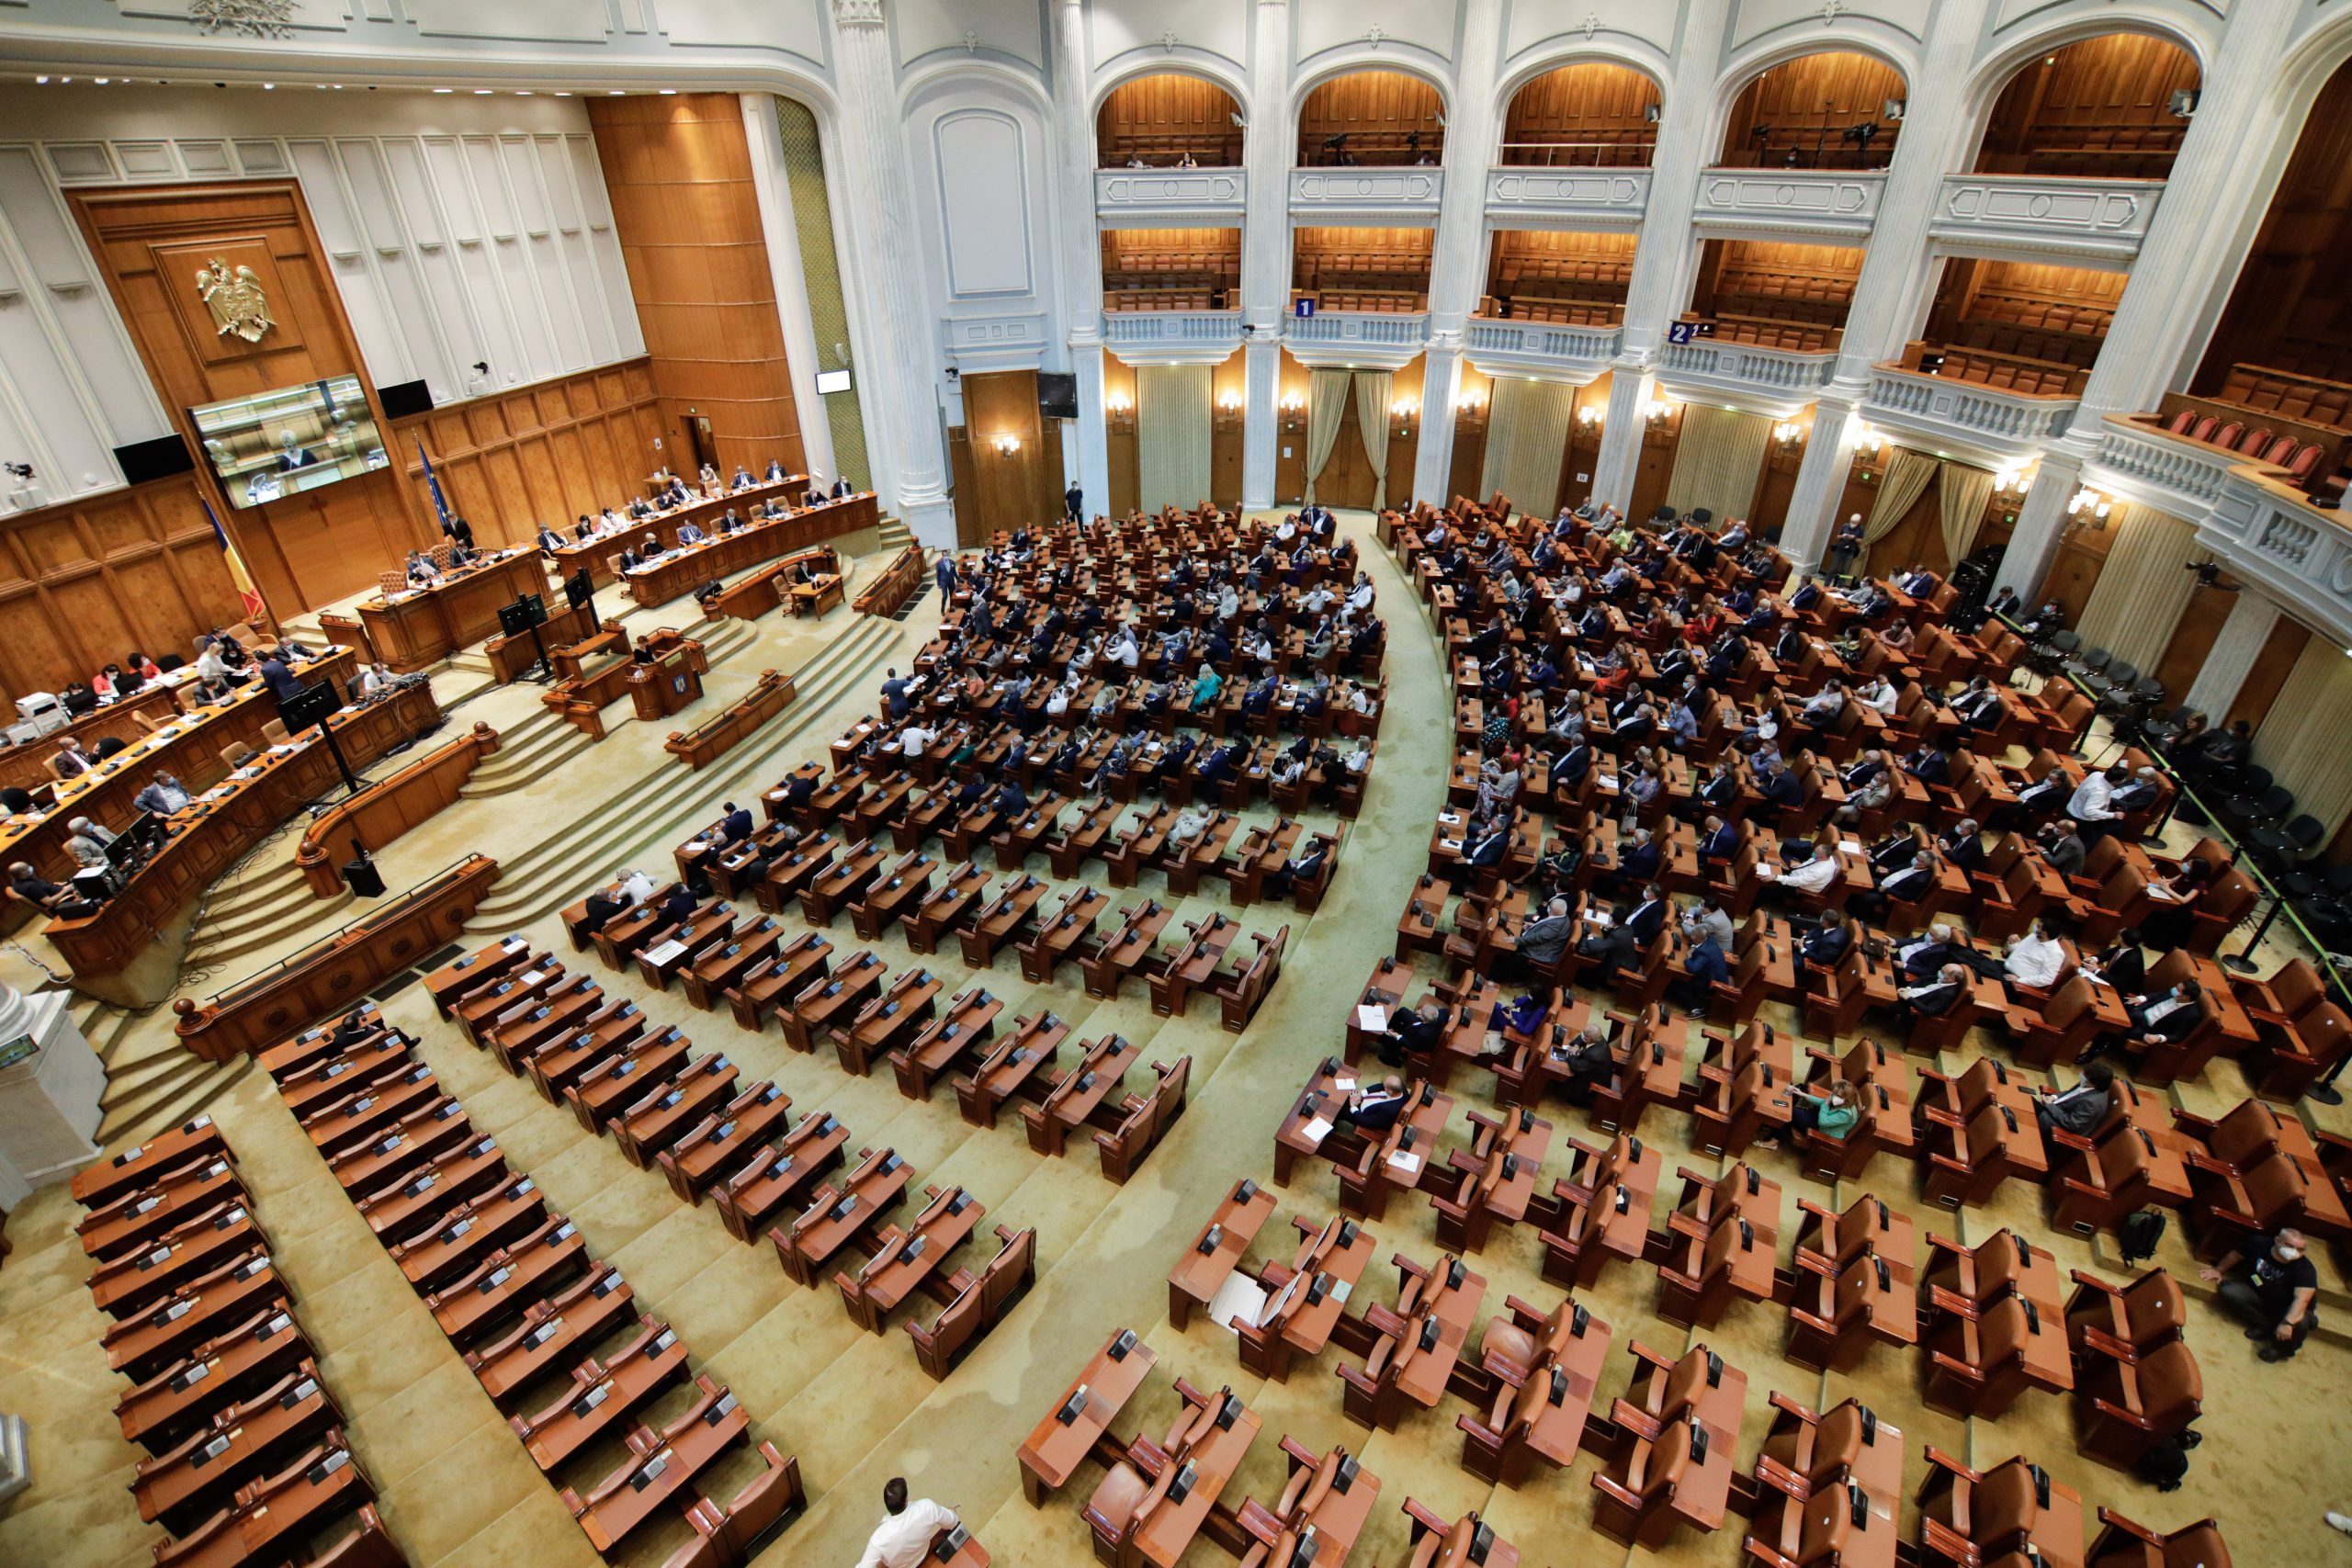 Veniturile lunare ale senatorilor și deputaților din Parlamentul României. Inquam Photos / George Calin